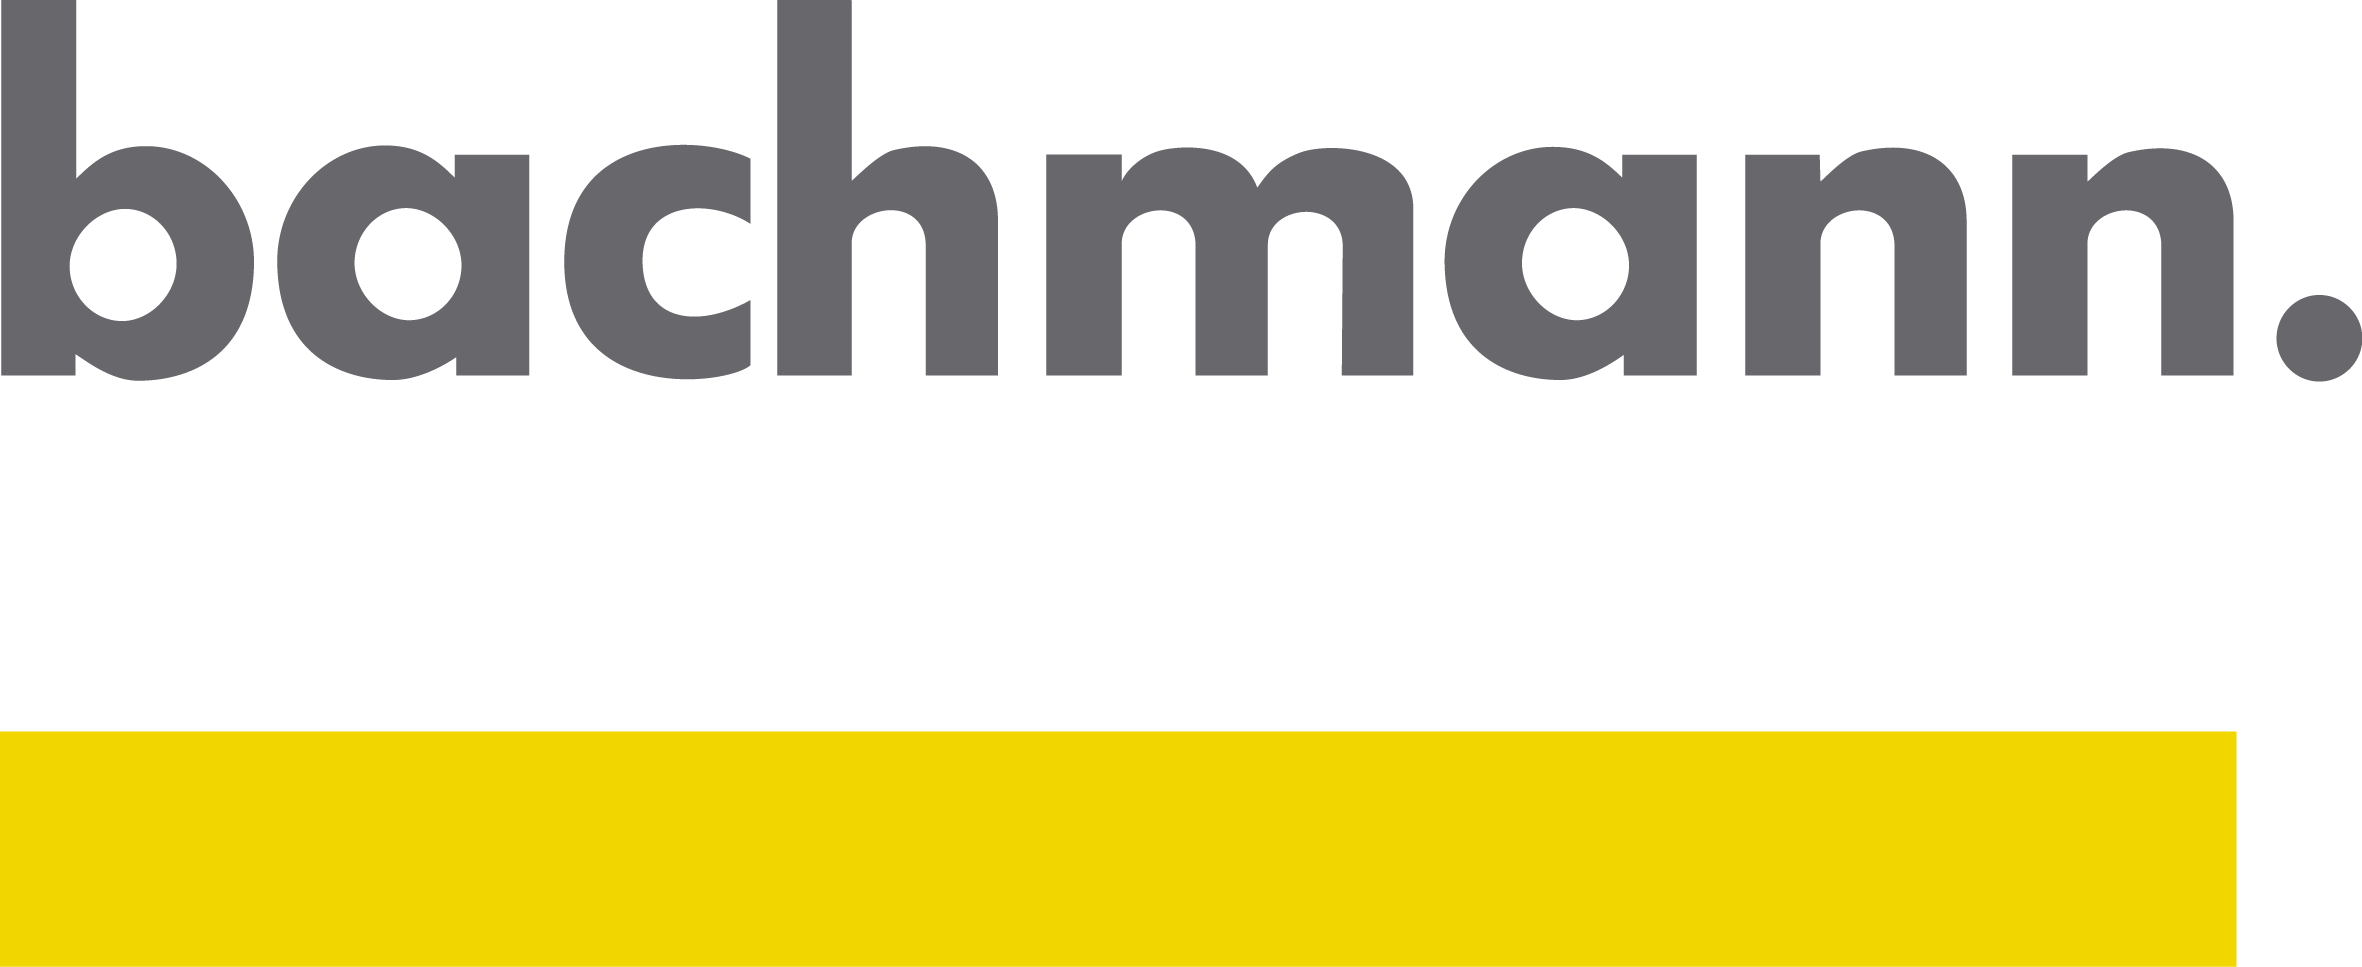 Bachmann Electronic GmbH.